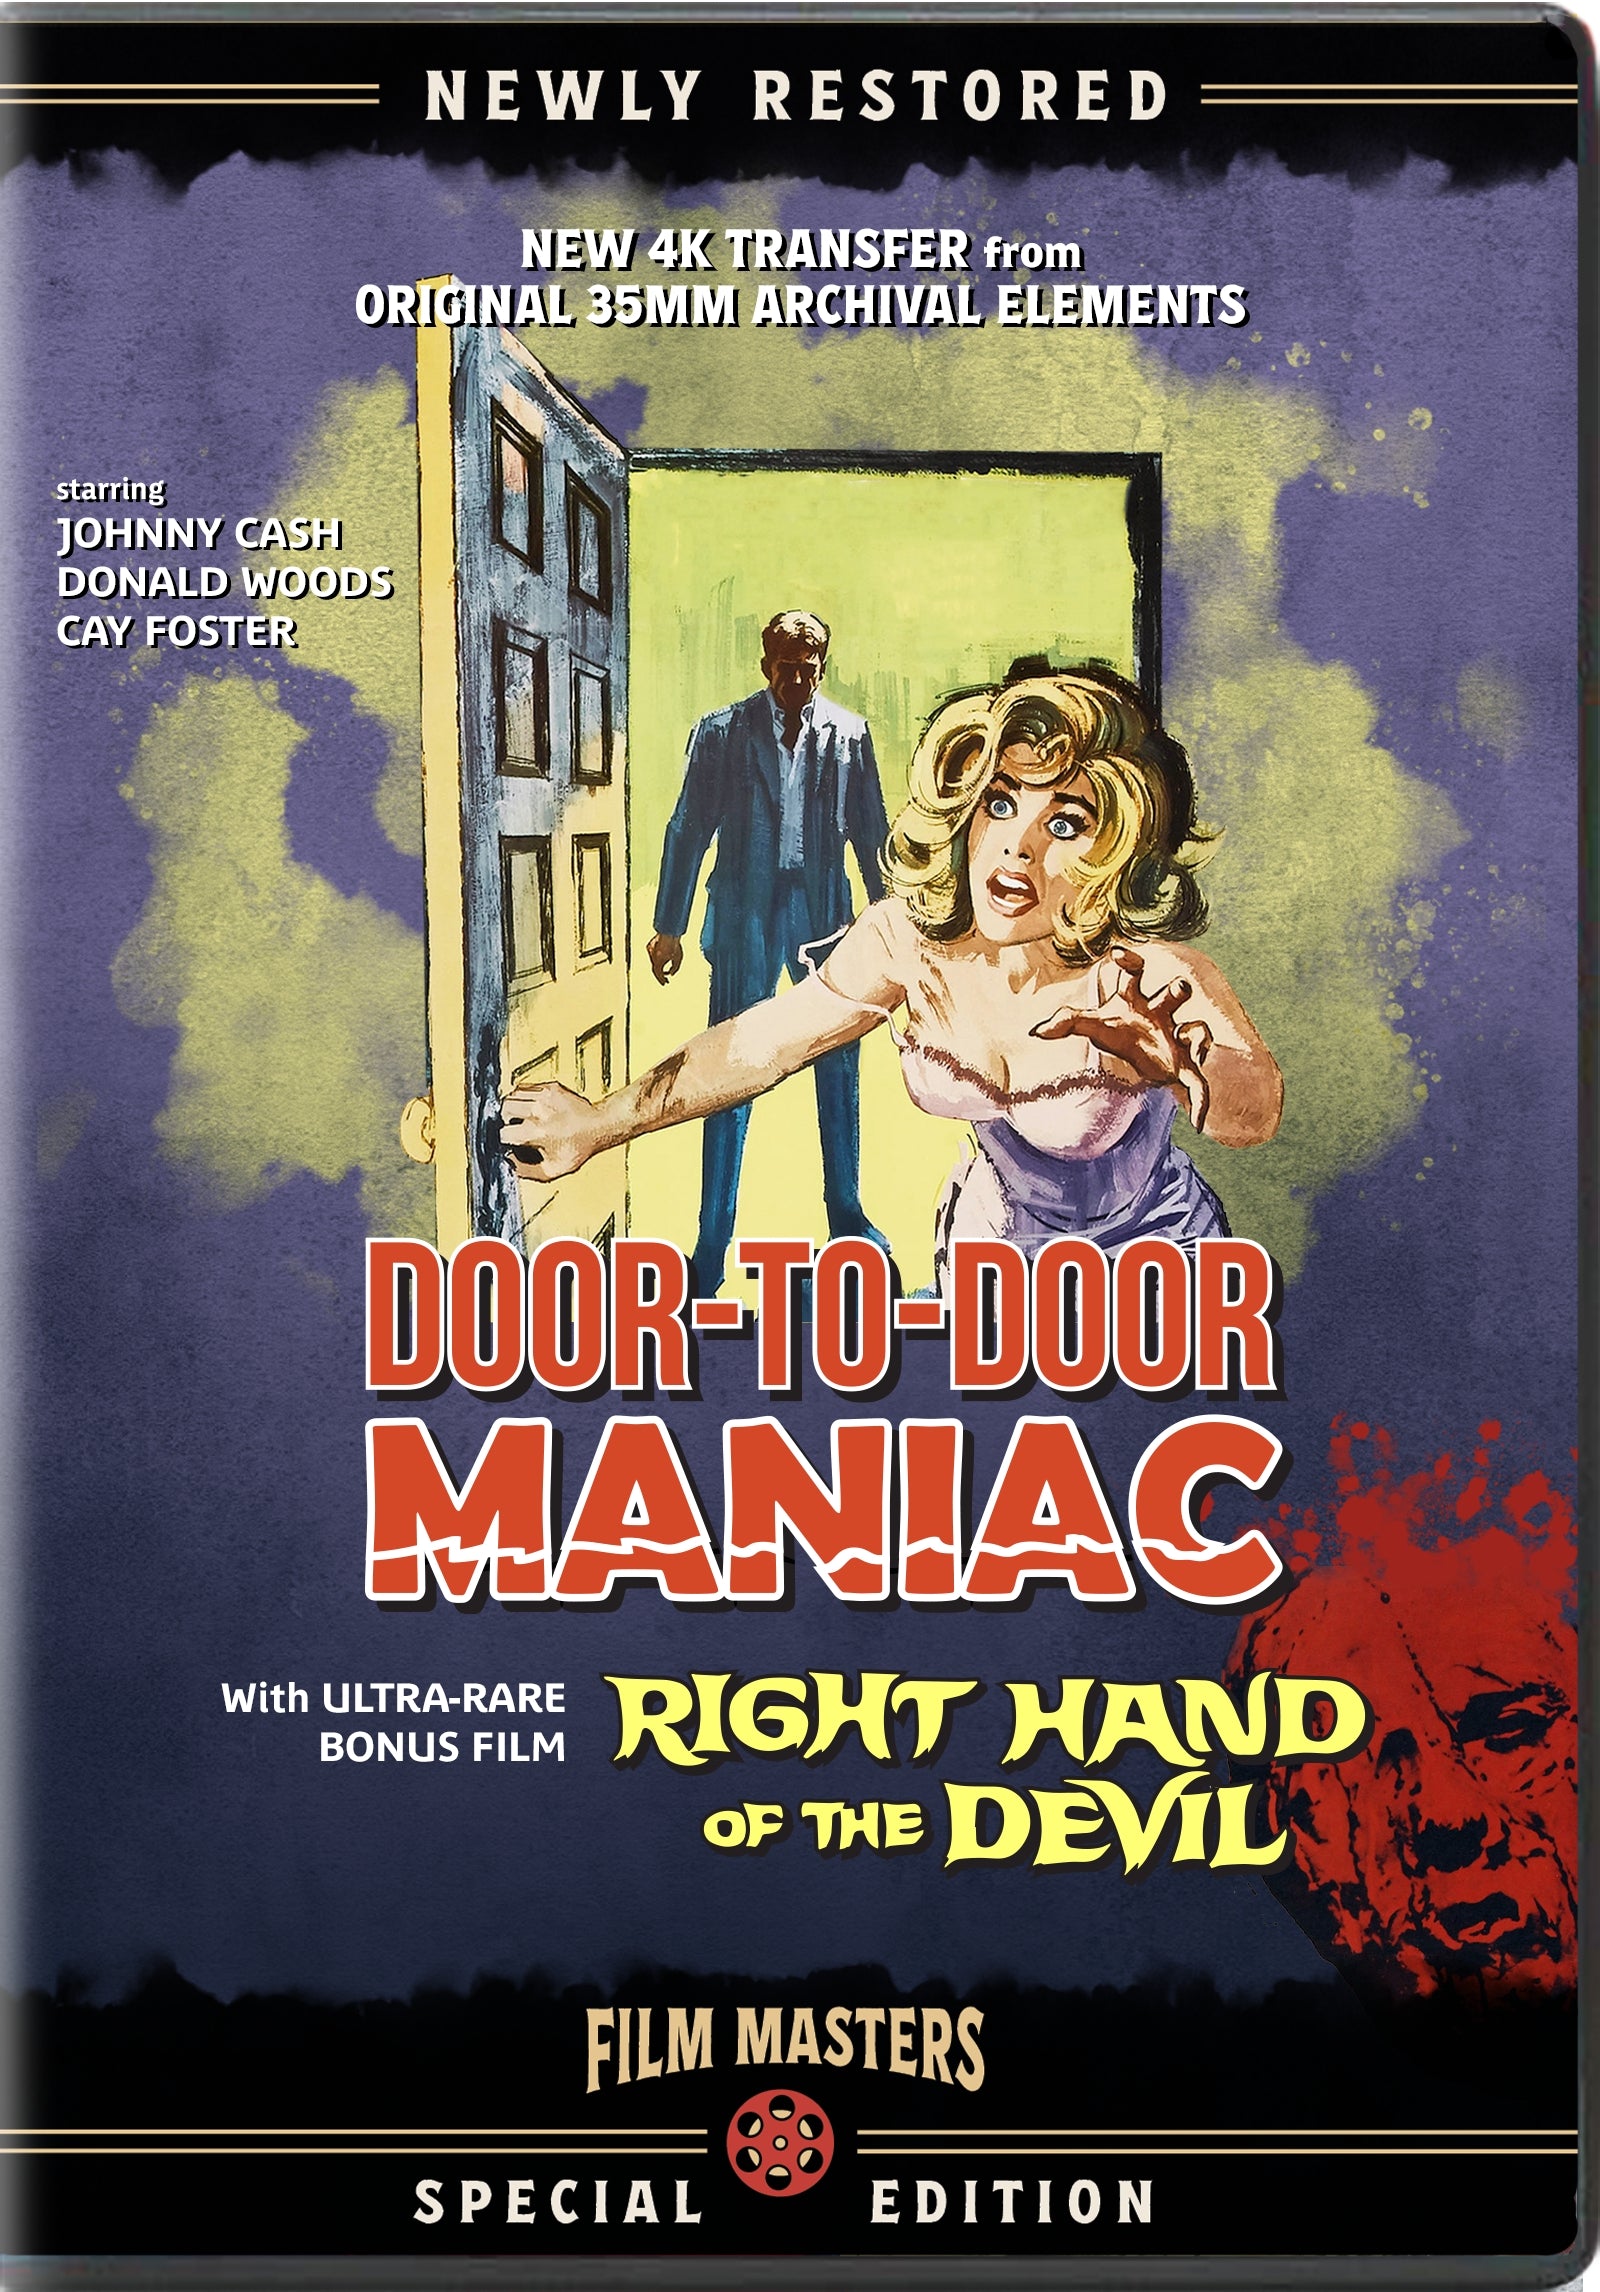 DOOR-TO-DOOR MANIAC / RIGHT HAND OF THE DEVIL DVD [PRE-ORDER]